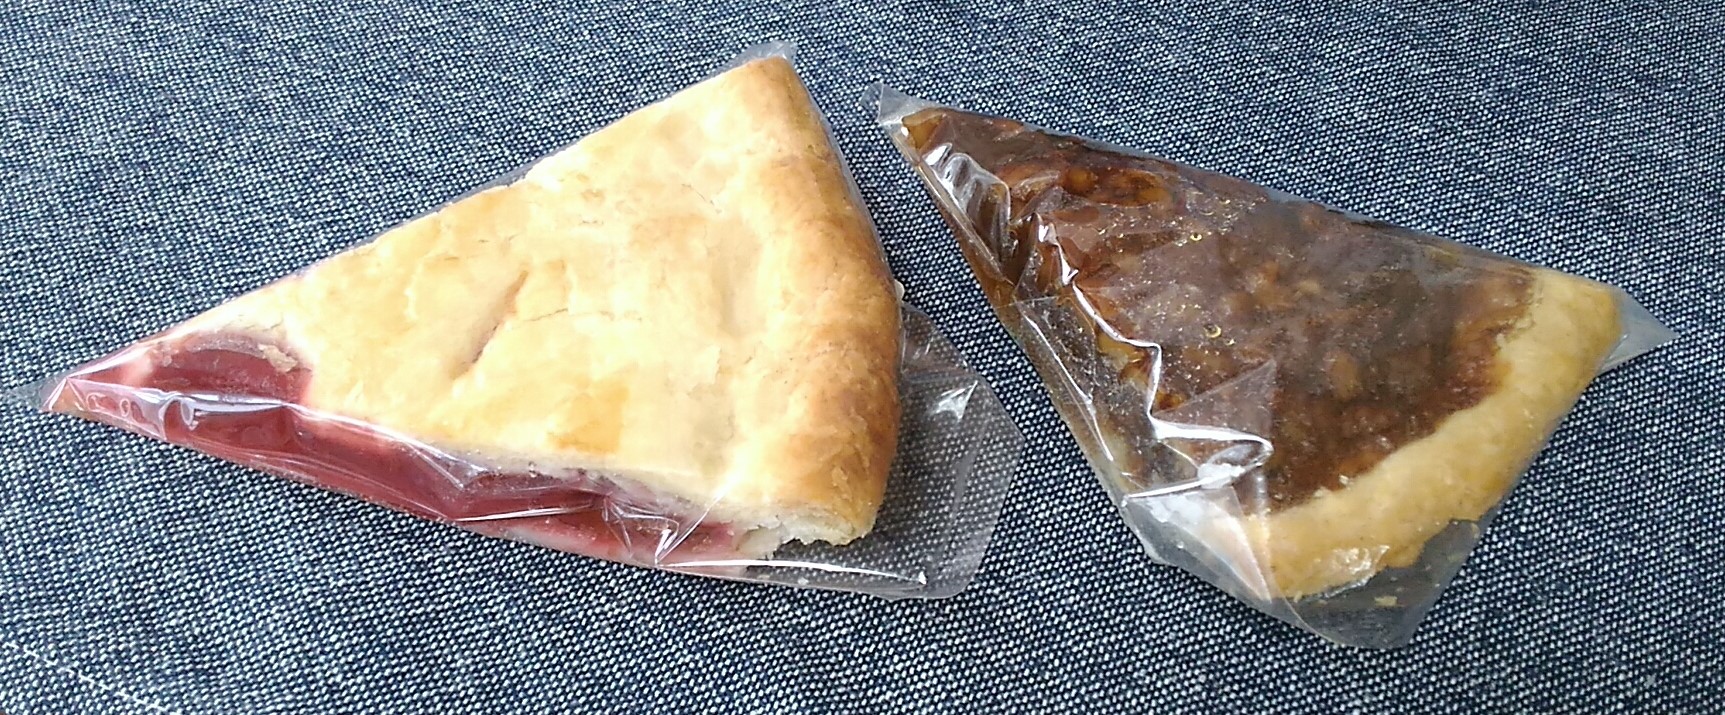 三沢市のパイとケーキの店 パティスリータカノ むさし屋にてアメリカンドーナツとパイを買って食べました Hit Teamたねちゃん